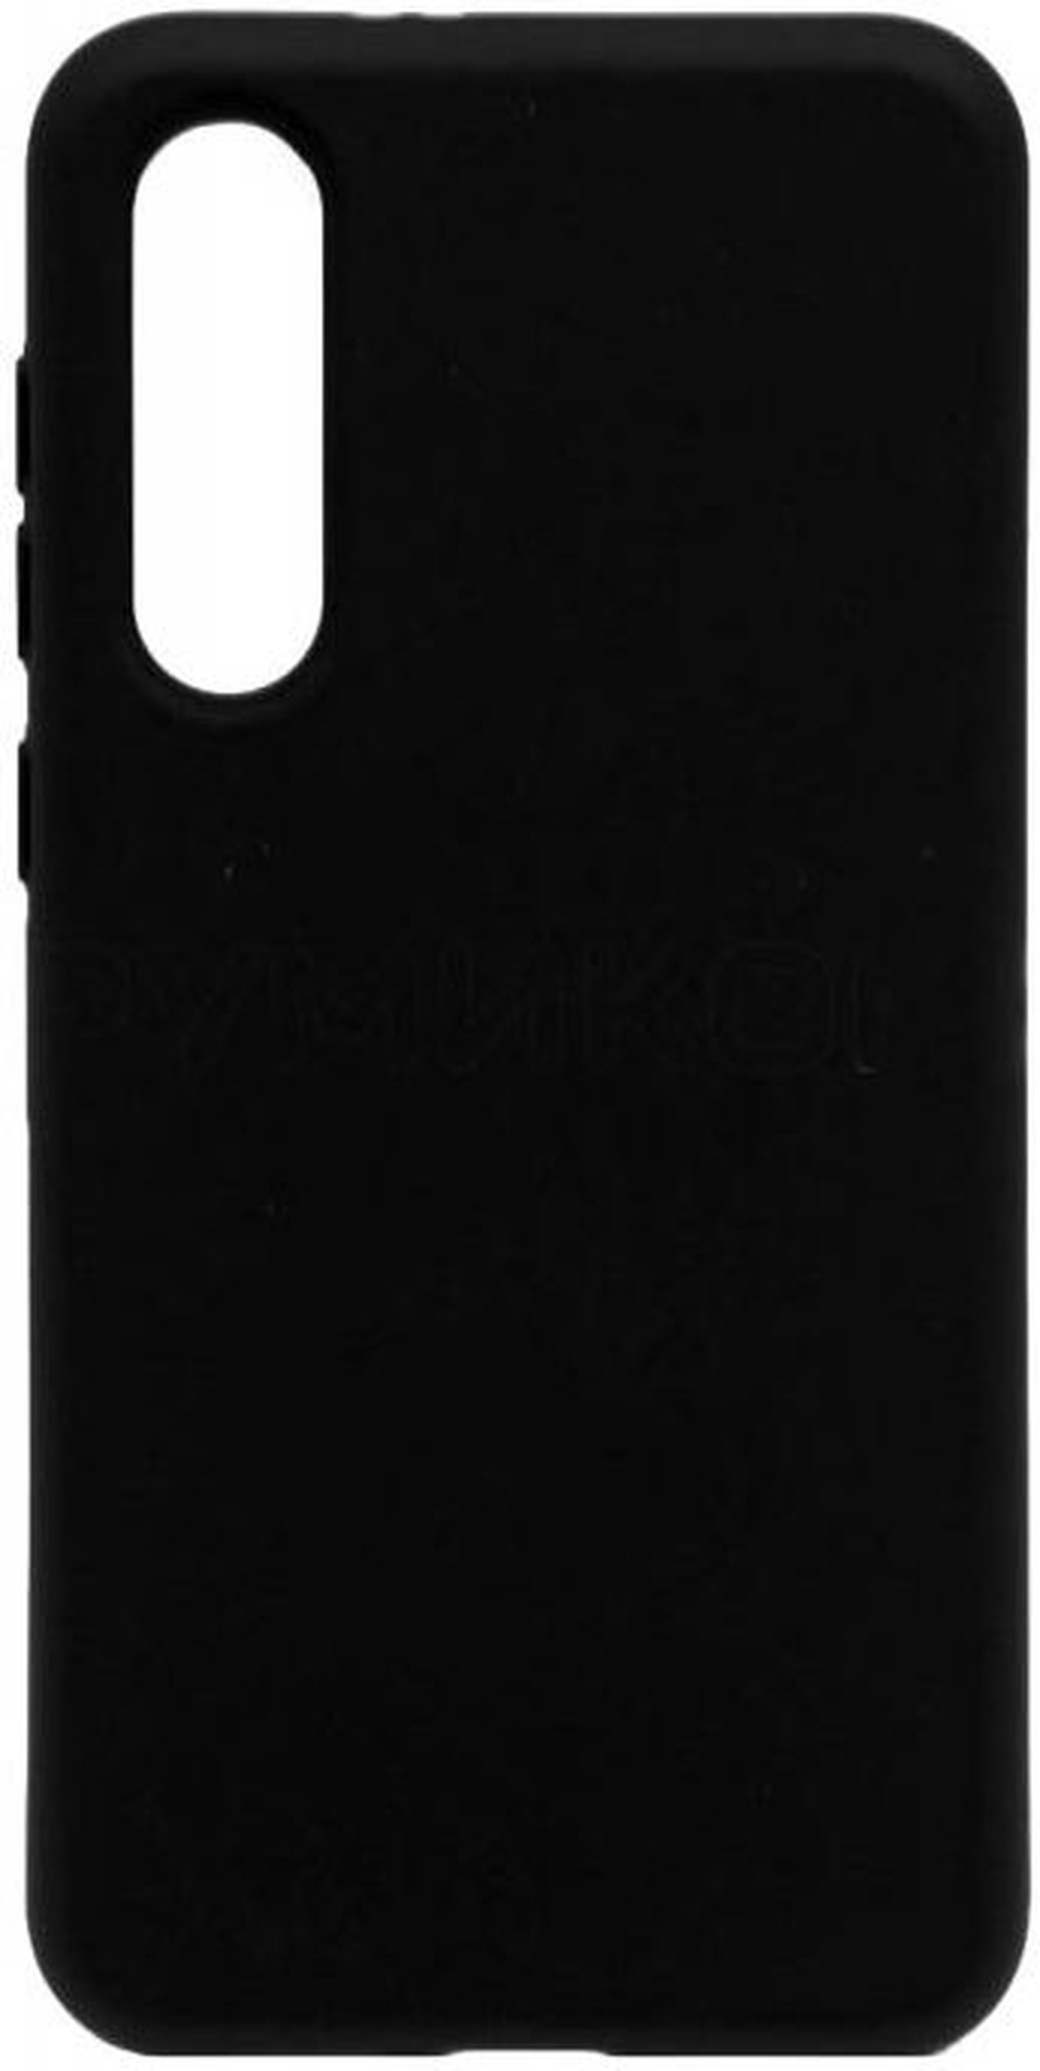 Чехол-накладка Hard Case для Xiaomi Mi 9 SE черный, Borasco фото